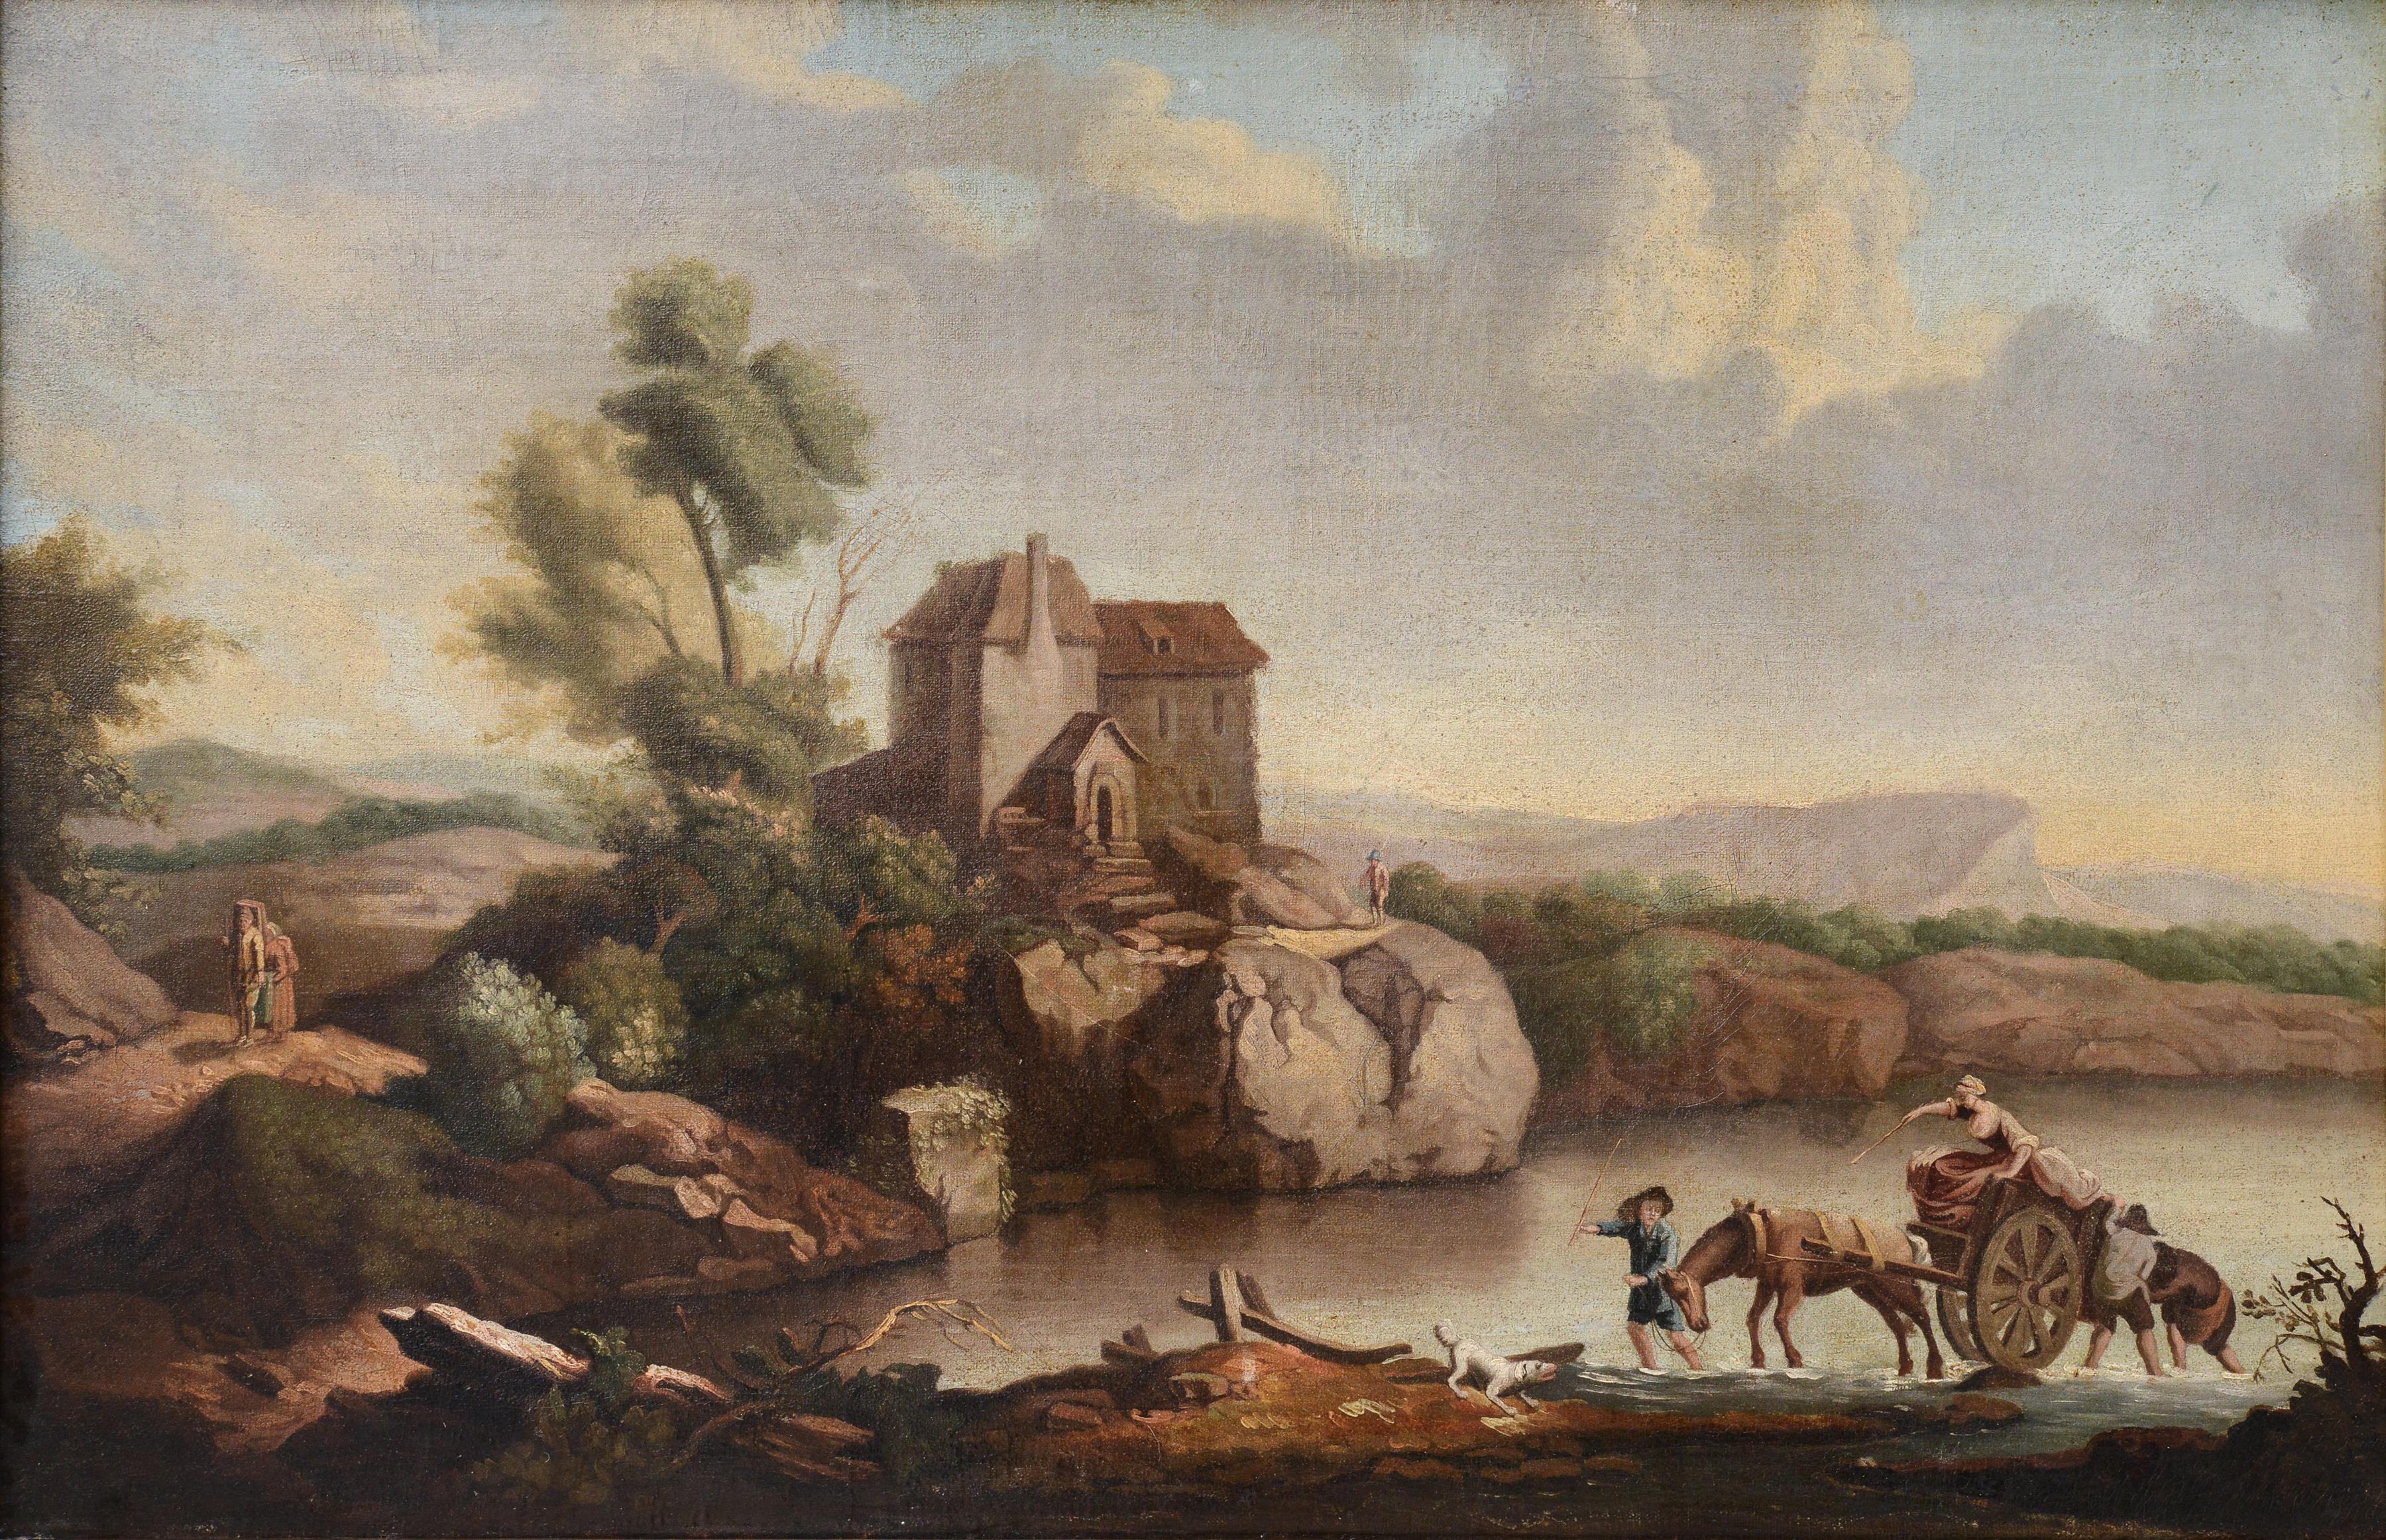 Figurative Painting Unknown - Le passage du gué Capriccio Paysage baroque XVIIIe siècle Huile sur toile 